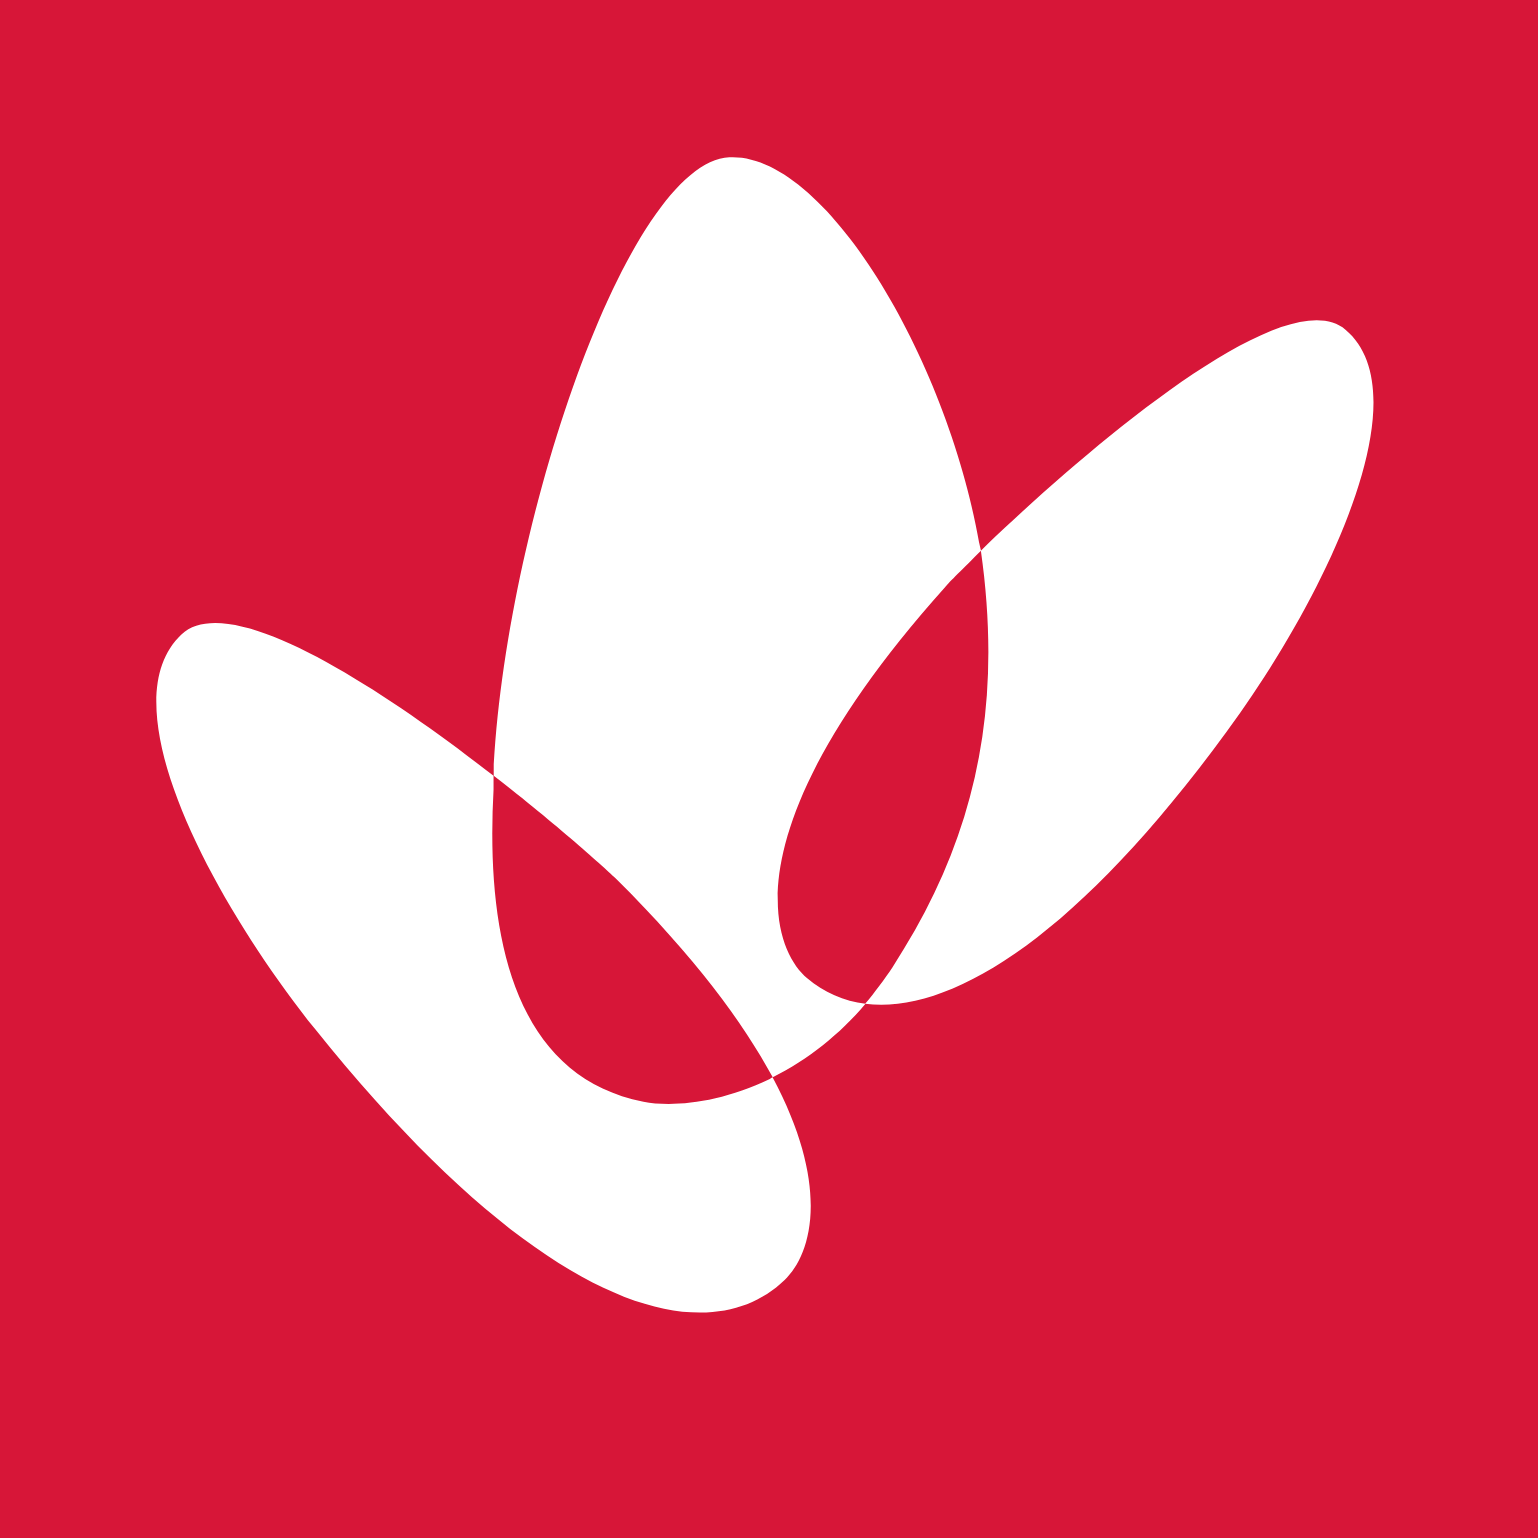 Woodside Energy logo (transparent PNG)